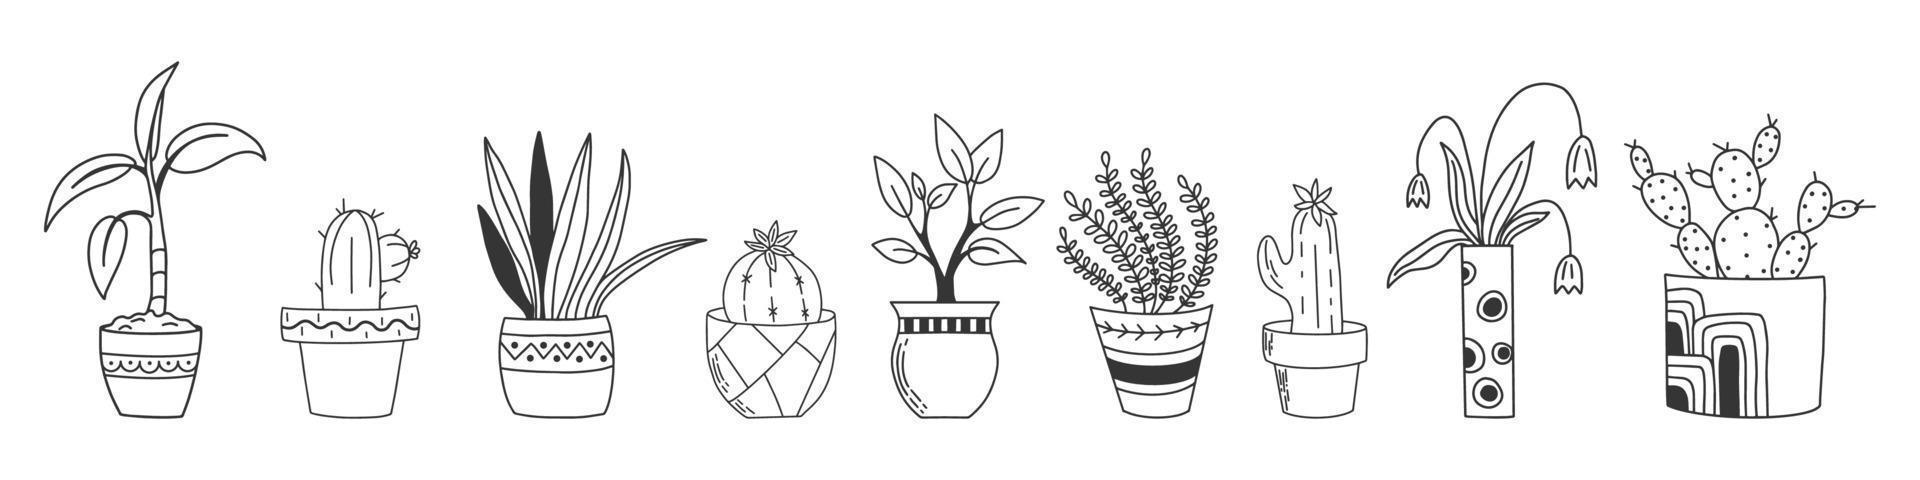 hand getrokken set kamerplanten geïsoleerd op een witte achtergrond. doodle stijl collectie potplanten. vector clipart voor plantenwinkel, social media post, voor scrapbooking en meer.